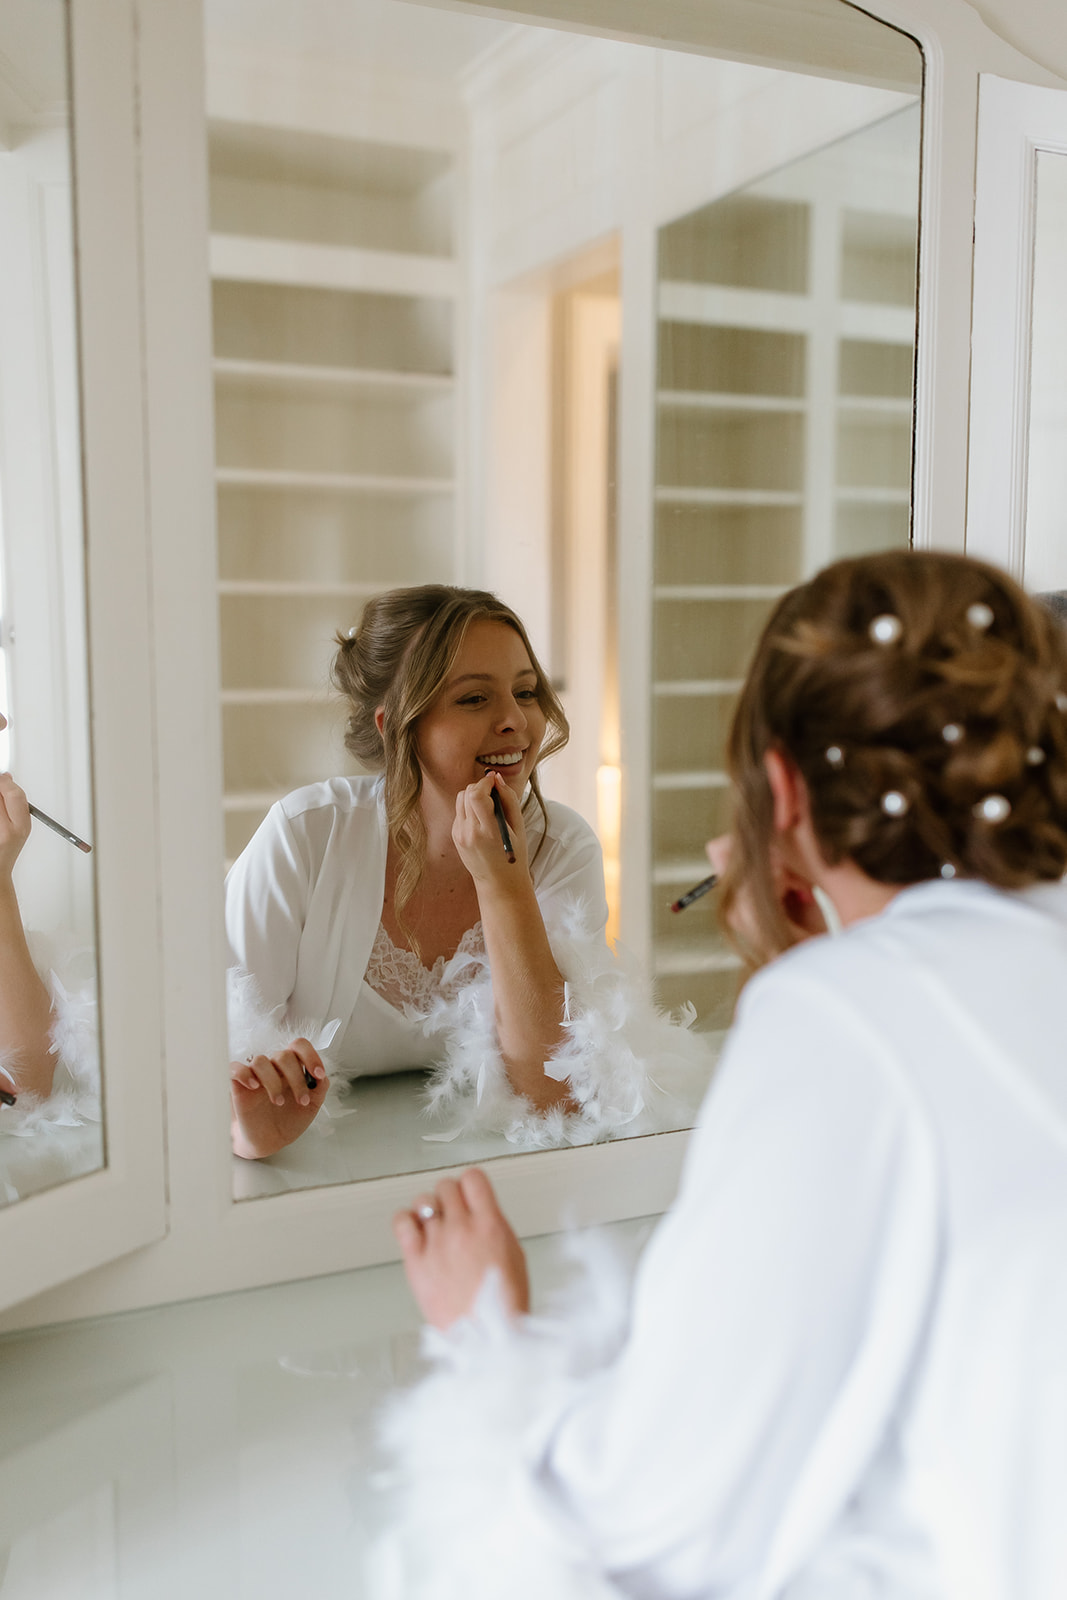 Bride putting lipstick on in mirror